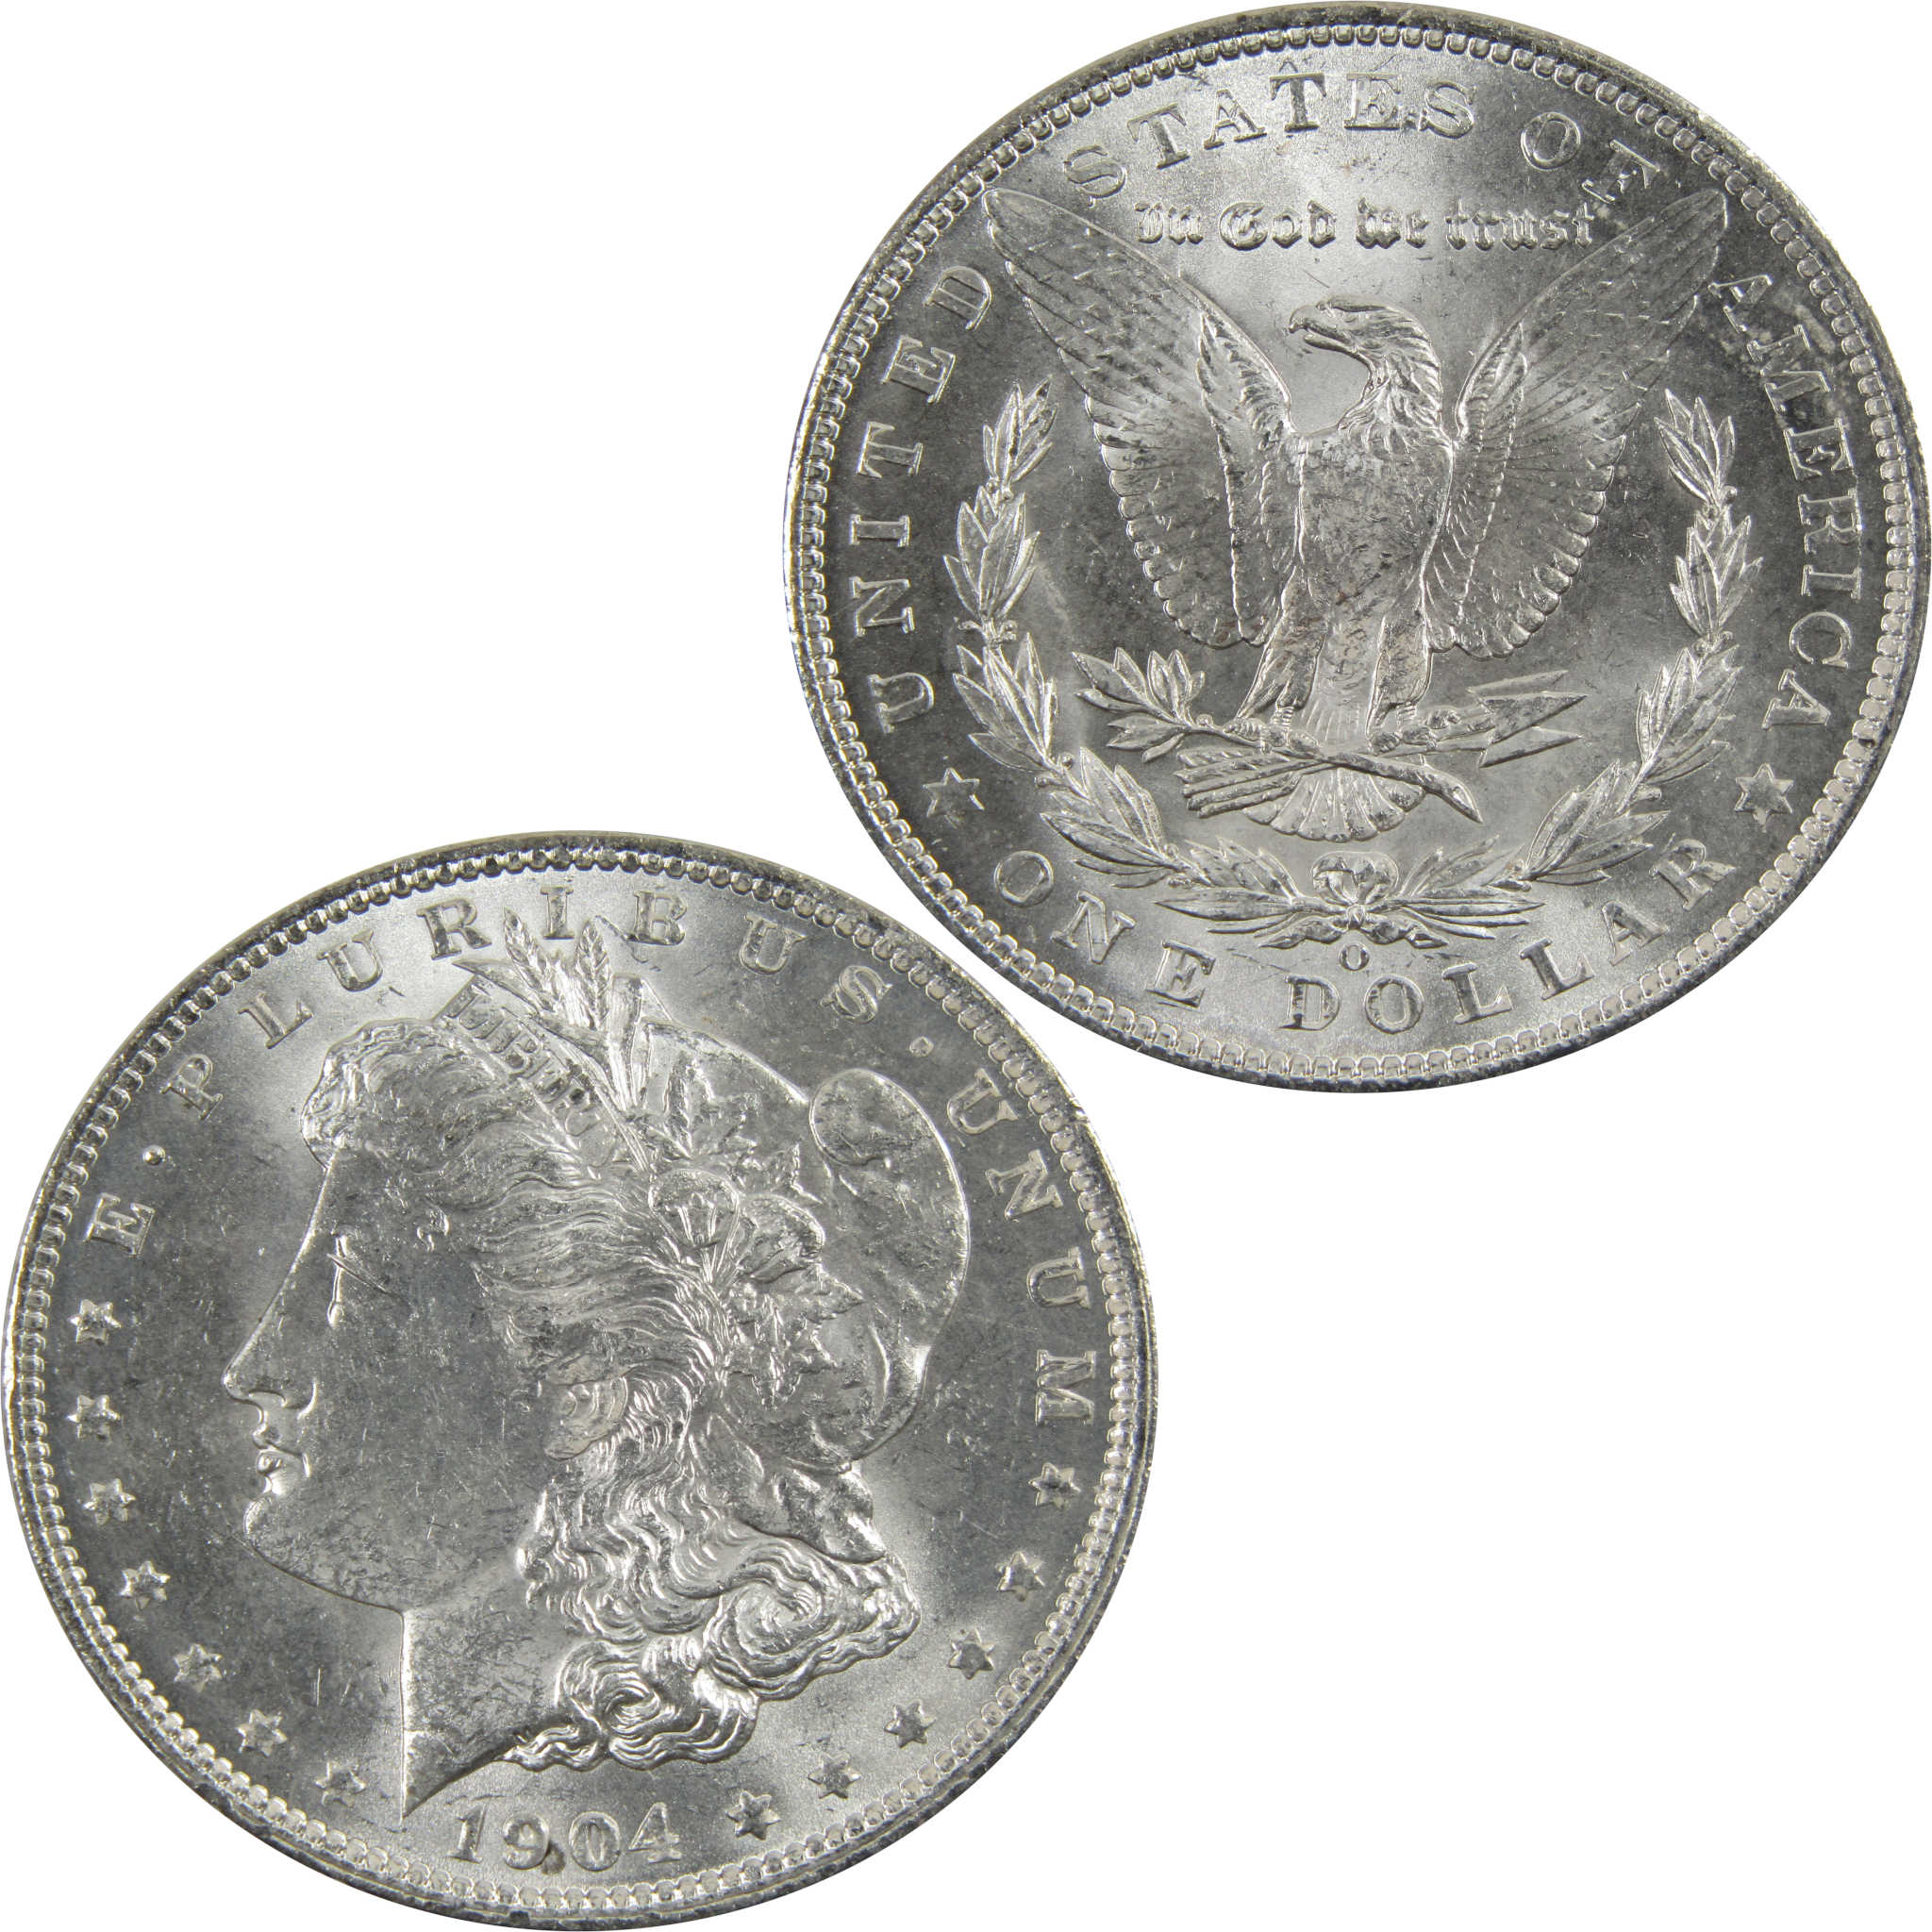 1904 O Morgan Dollar BU Uncirculated 90% Silver $1 Coin SKU:I5295 - Morgan coin - Morgan silver dollar - Morgan silver dollar for sale - Profile Coins &amp; Collectibles